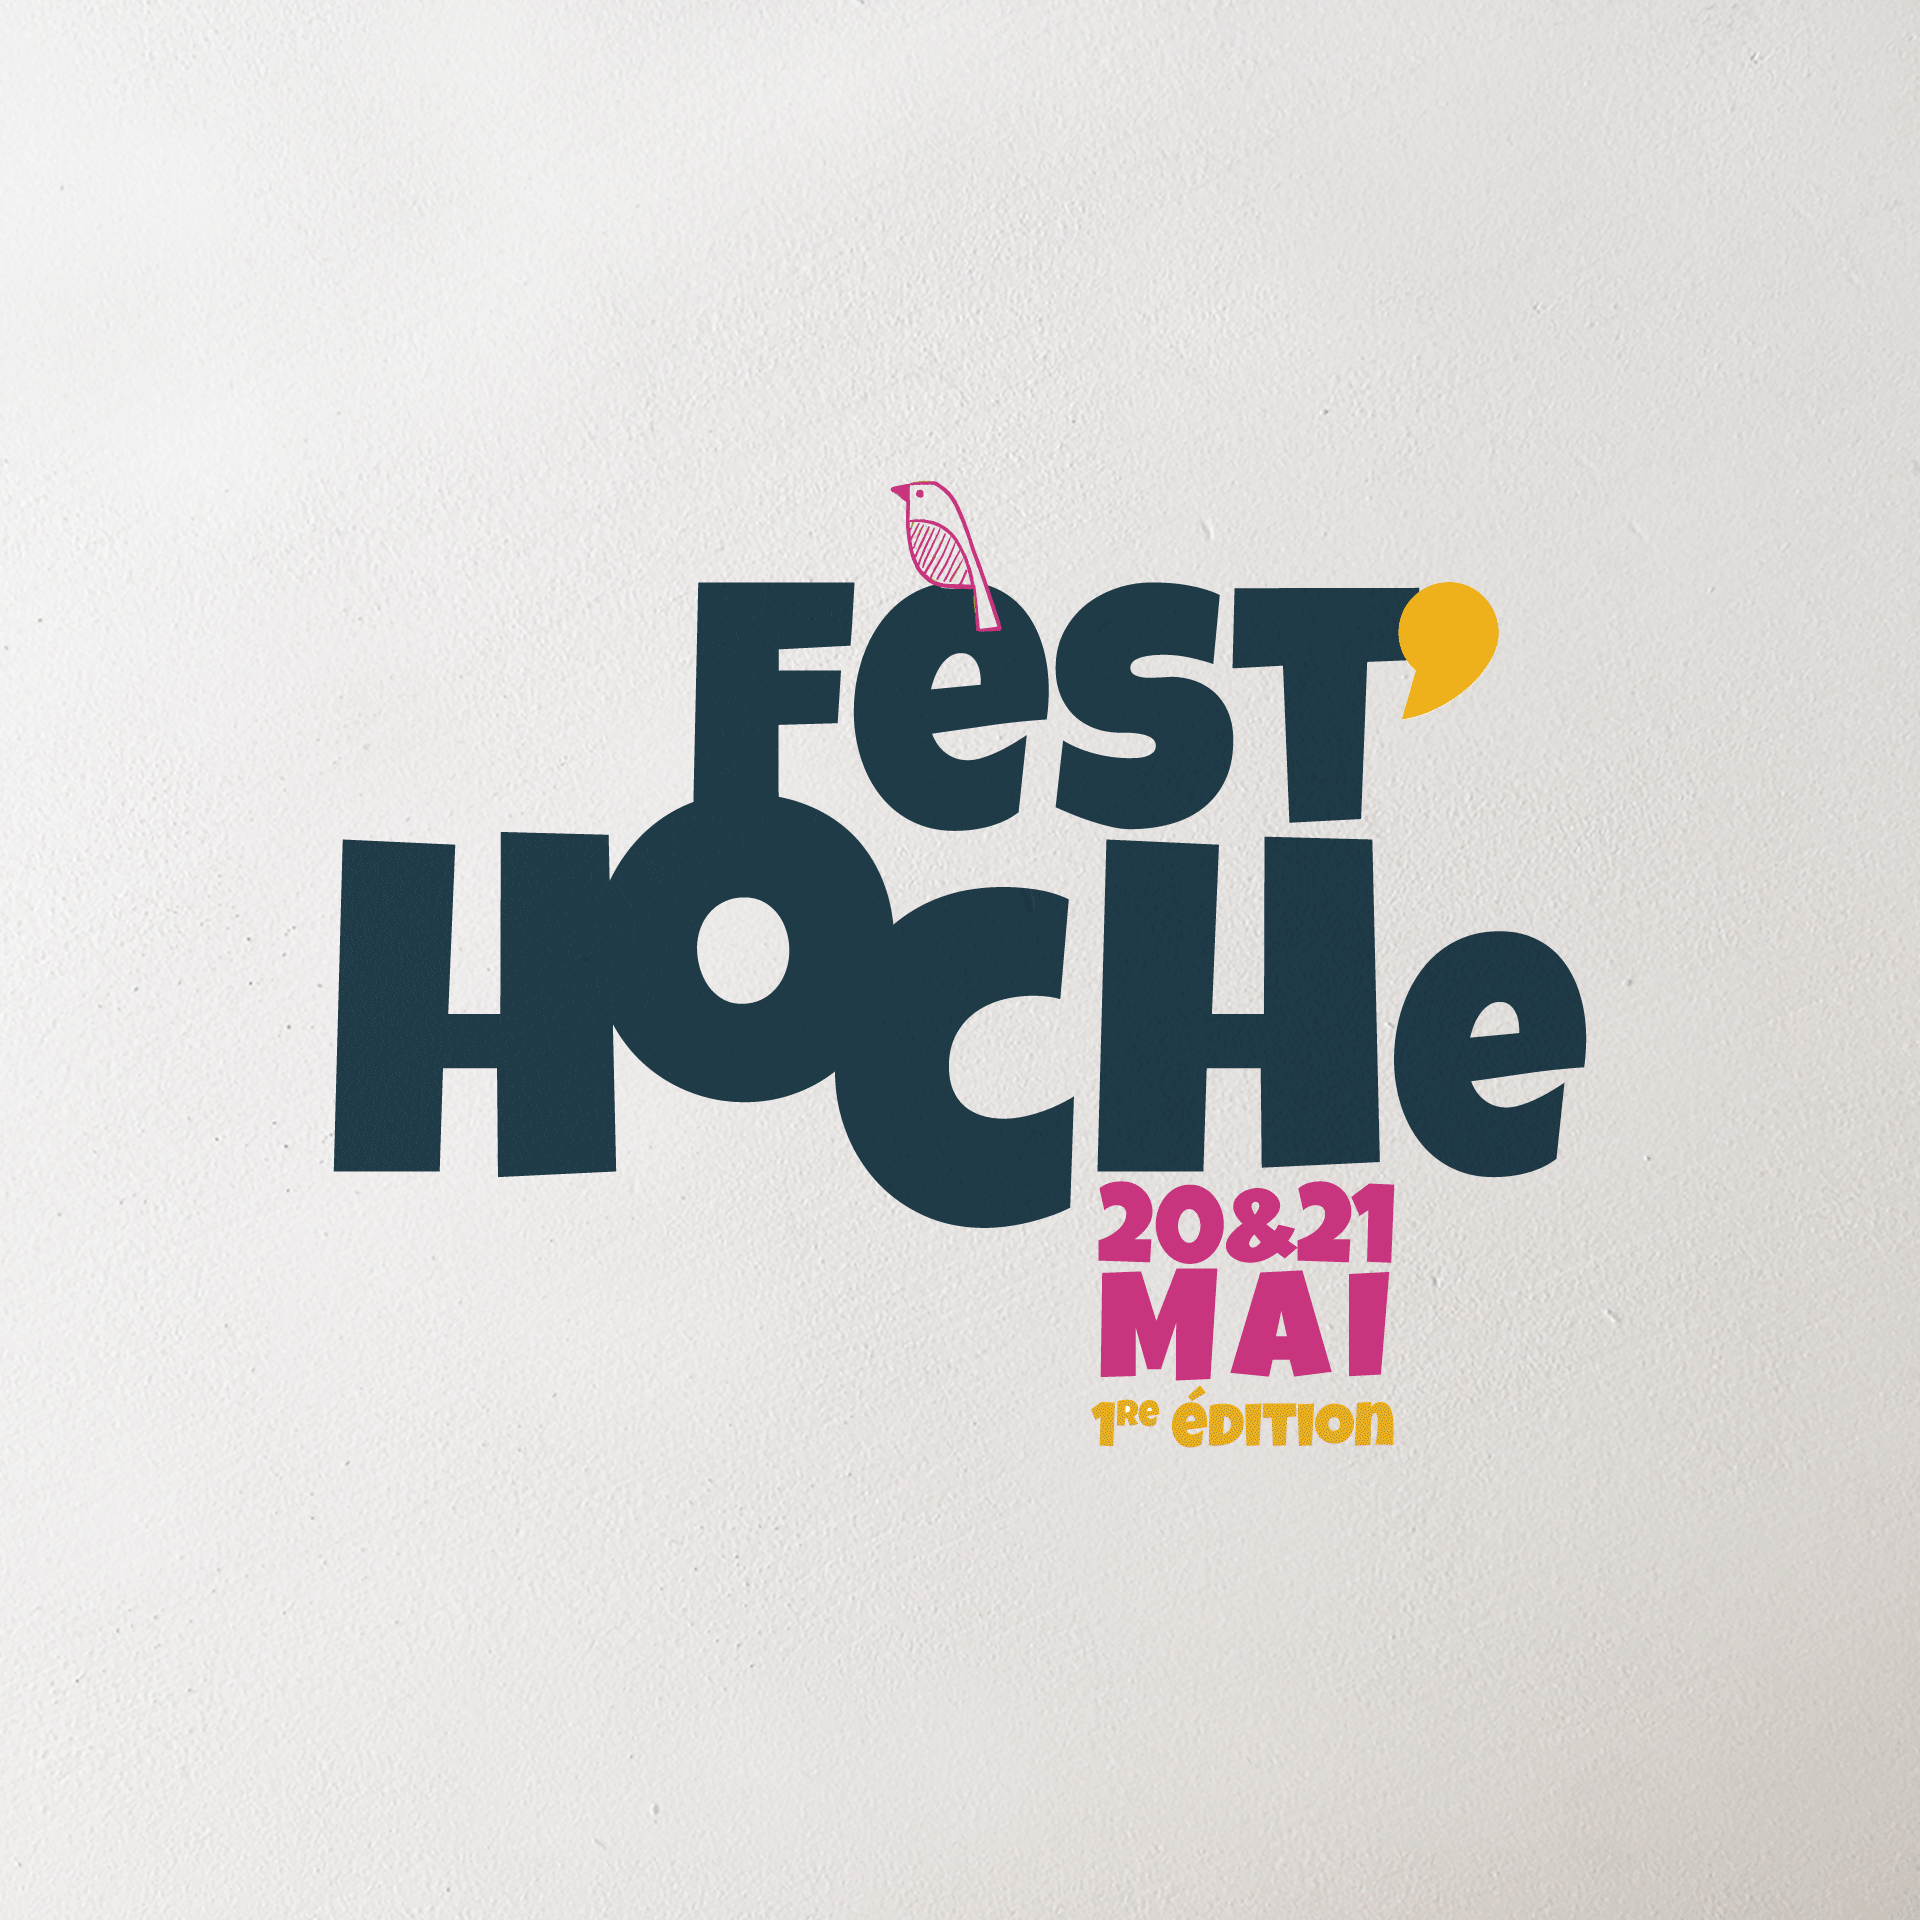 Identité graphique du Festival de quartier Fest'Hoche